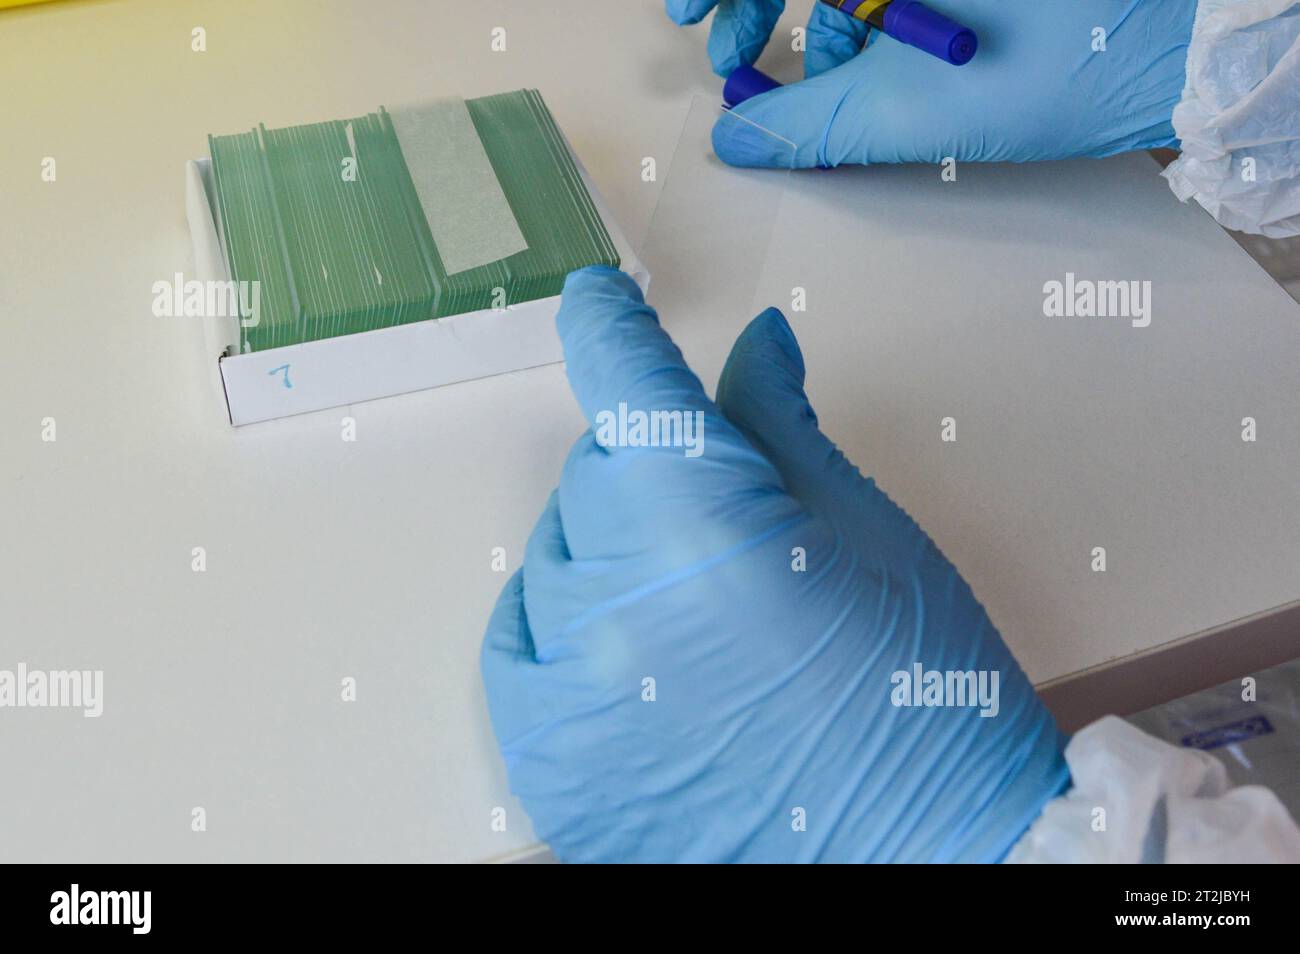 Die Objektträger für die mikroskopische zytologische Biopsieforschung. Stockfoto